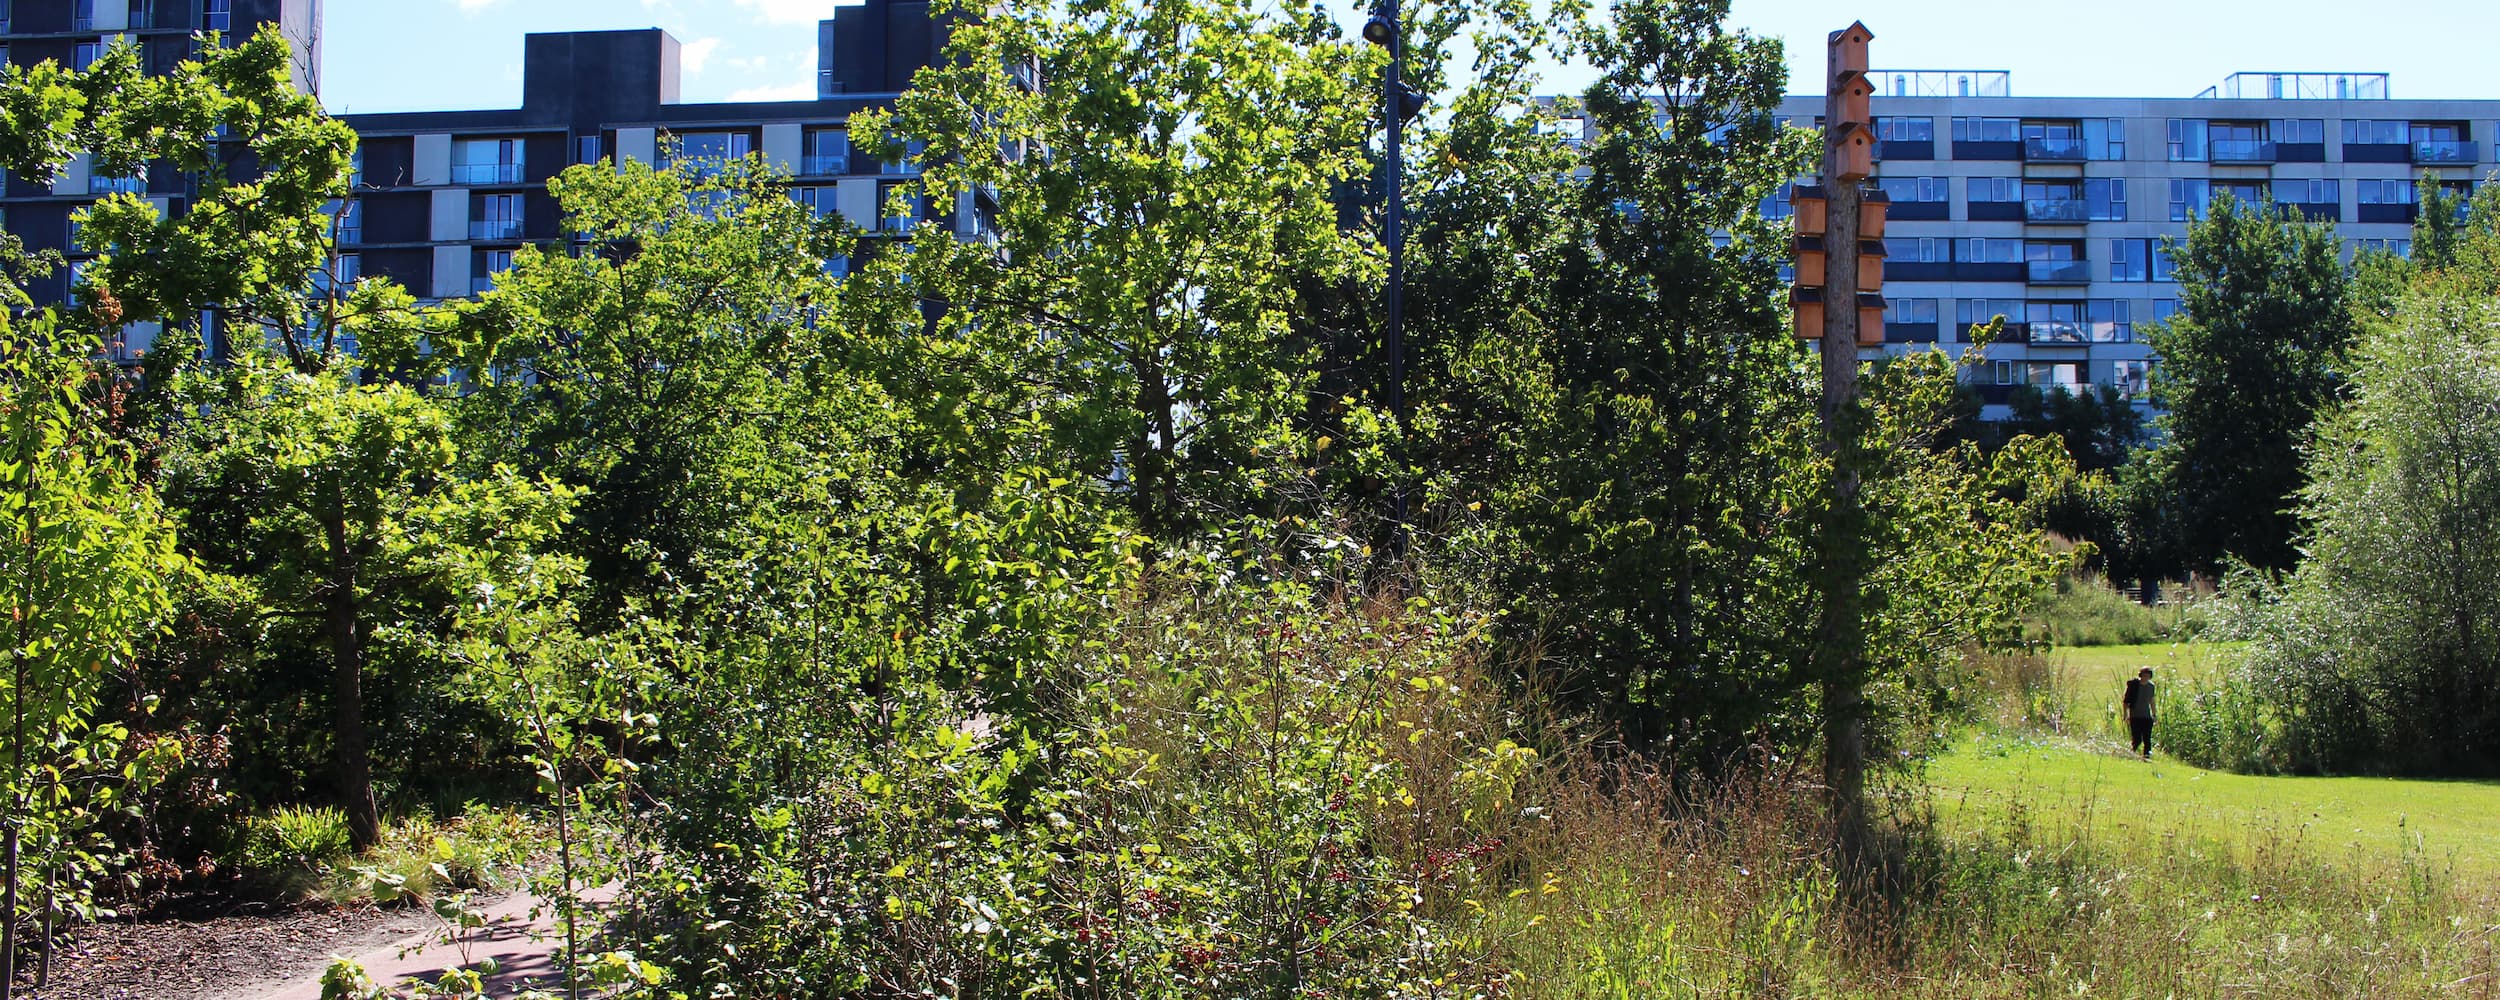 Ørestads fugledistrikt findes i Byparken i Ørestad City, nærmere bestemt det grønne anlæg Løvtaget mellem C.F. Møllers Allé og Edvard Thomsens Vej. Her har grundejerforeningen opsat ca. 30 mejsekasser og 12 stærekasser til byens næbbede beboere.